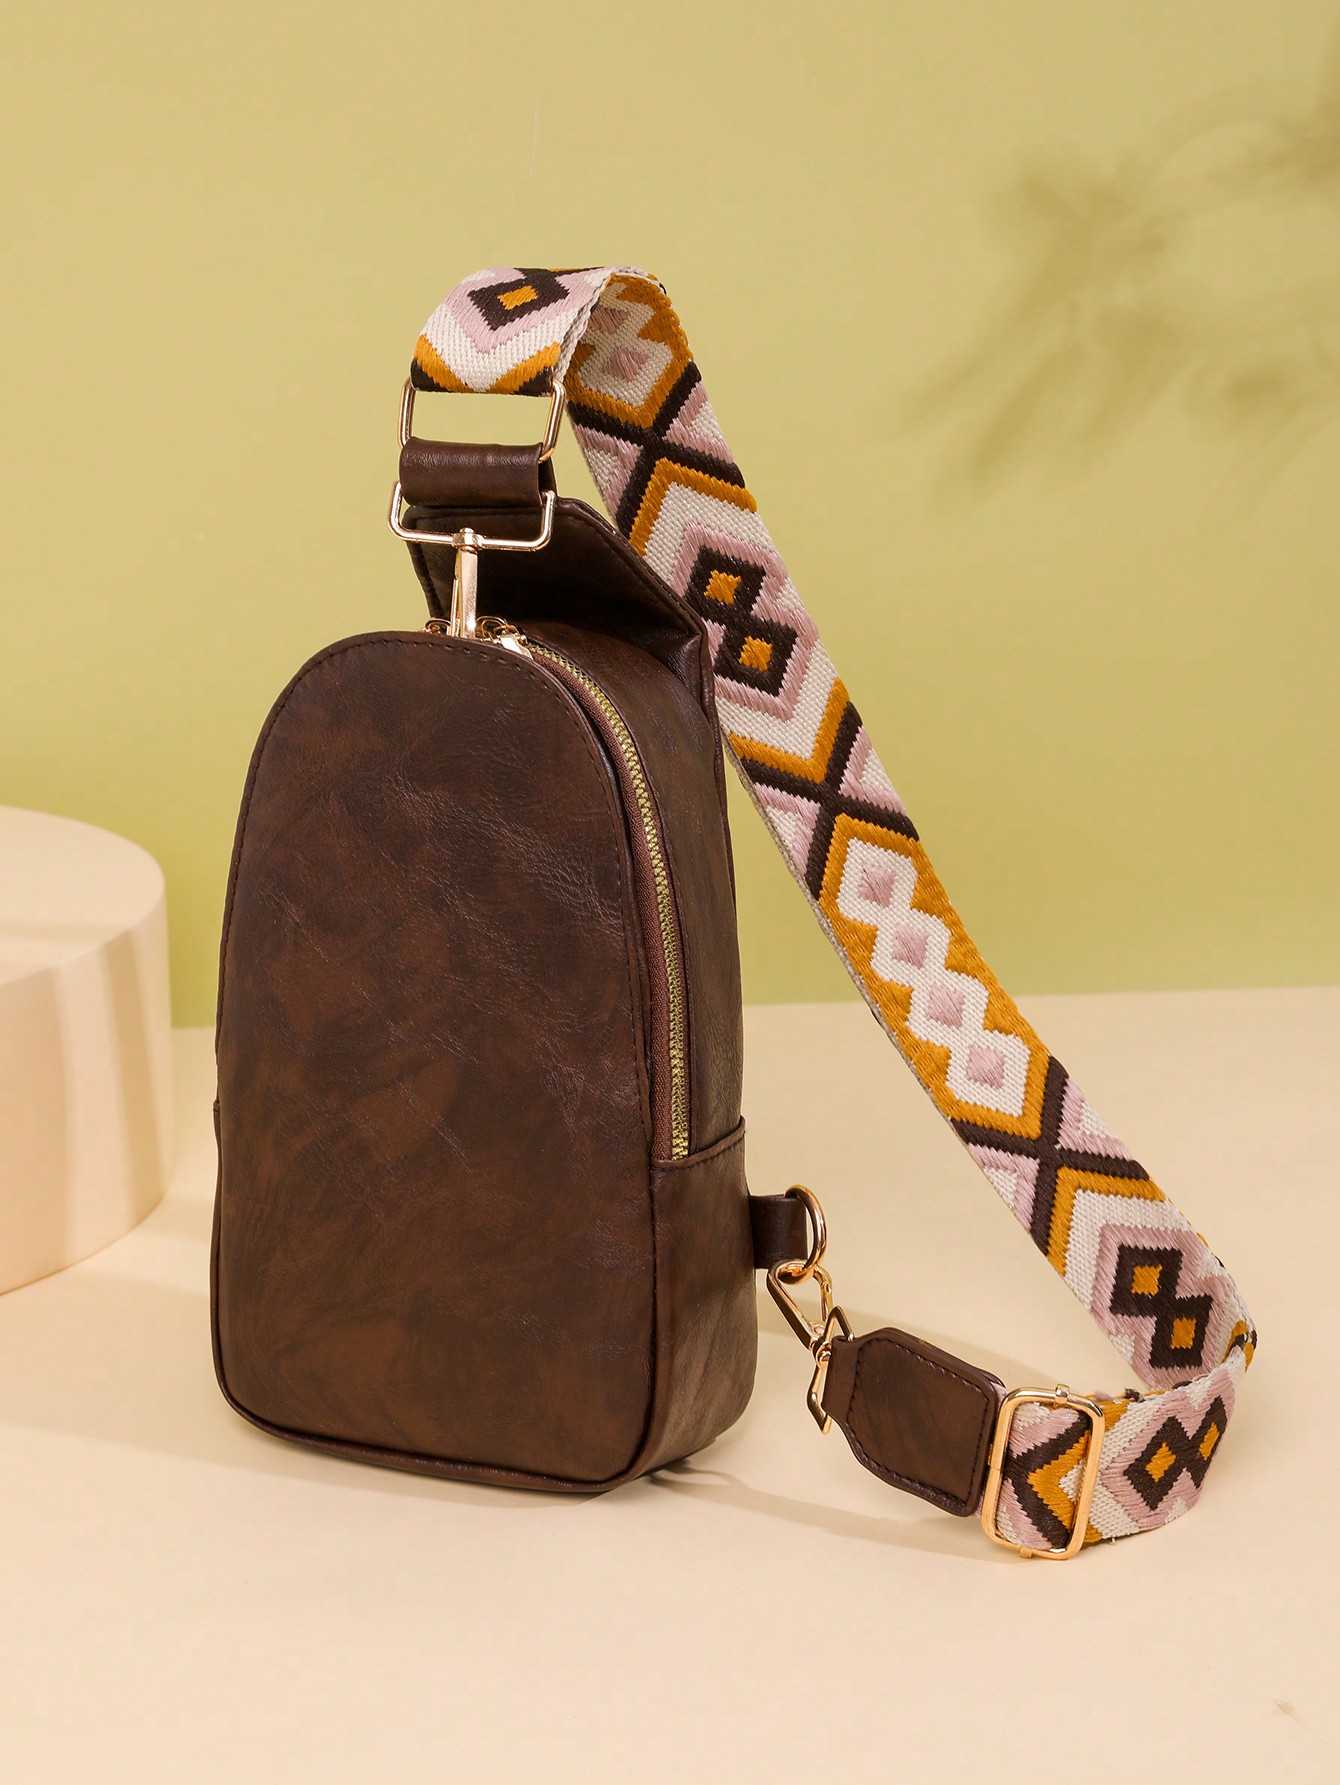 Сумка-слинг для женщин Сумка-слинг из искусственной кожи Маленький рюкзак через плечо Модная нагрудная сумка для путешествий, кофейный коричневый